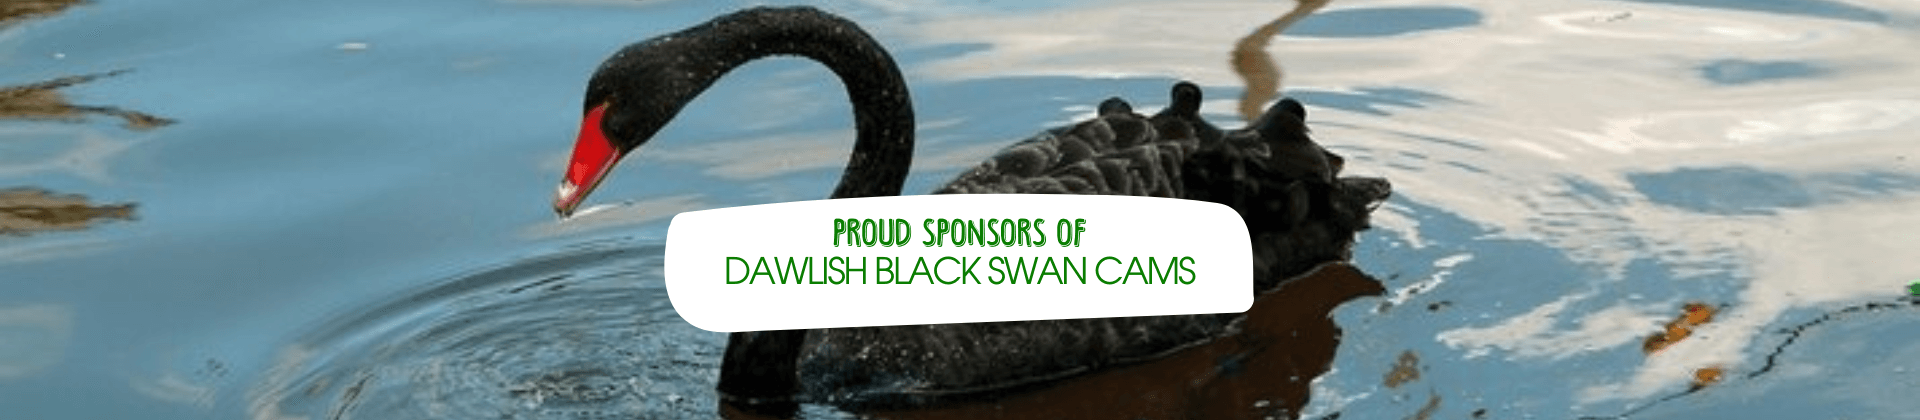 Dawlish Black Swan Cameras